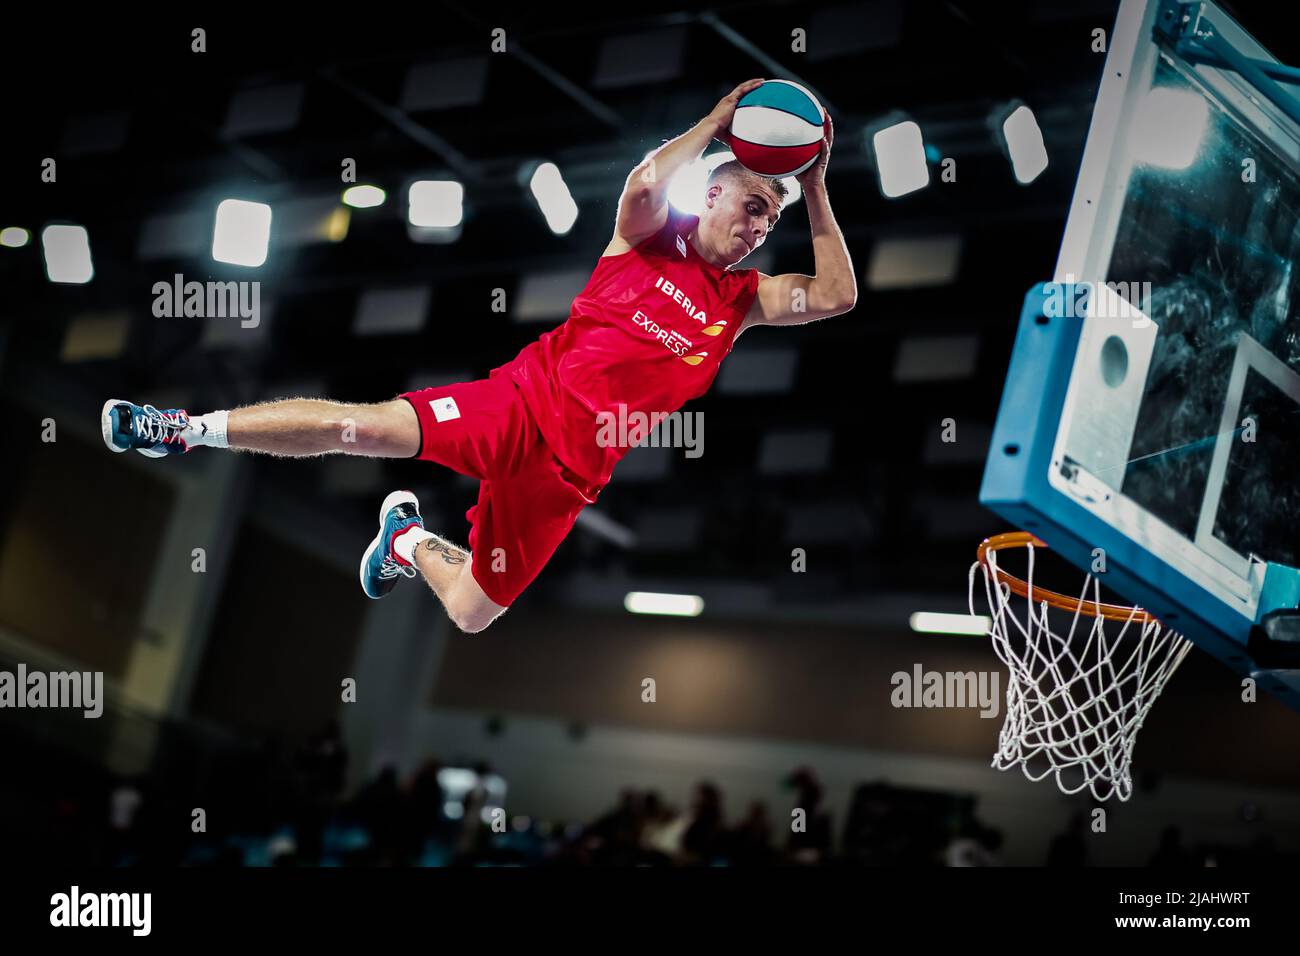 Ténérife, Espagne, 22 septembre 2018: Un joueur de basket-ball saute sur le panier avec le ballon entre les mains lors d'un spectacle acrobatique de basket-ball Banque D'Images